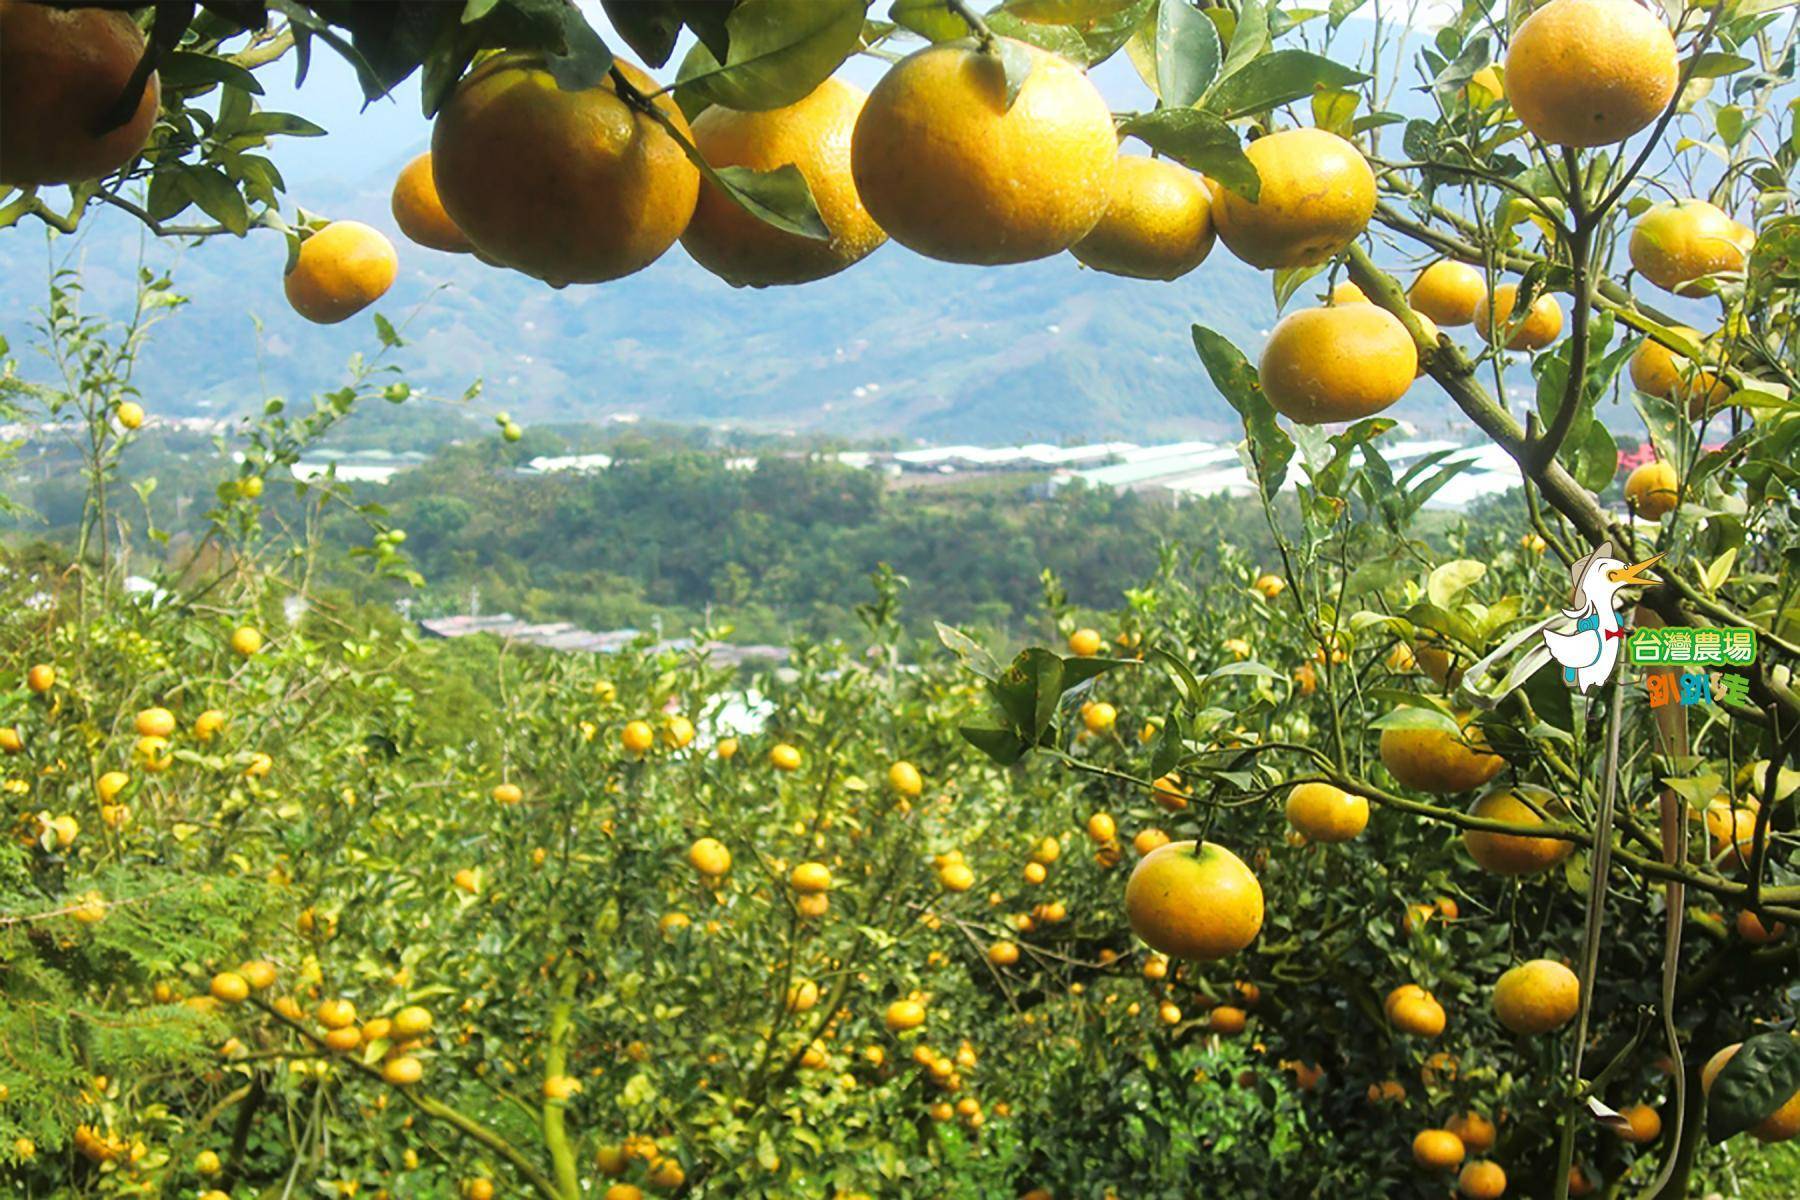 台中-公道農園-採果(柑橘、檸檬)體驗券2